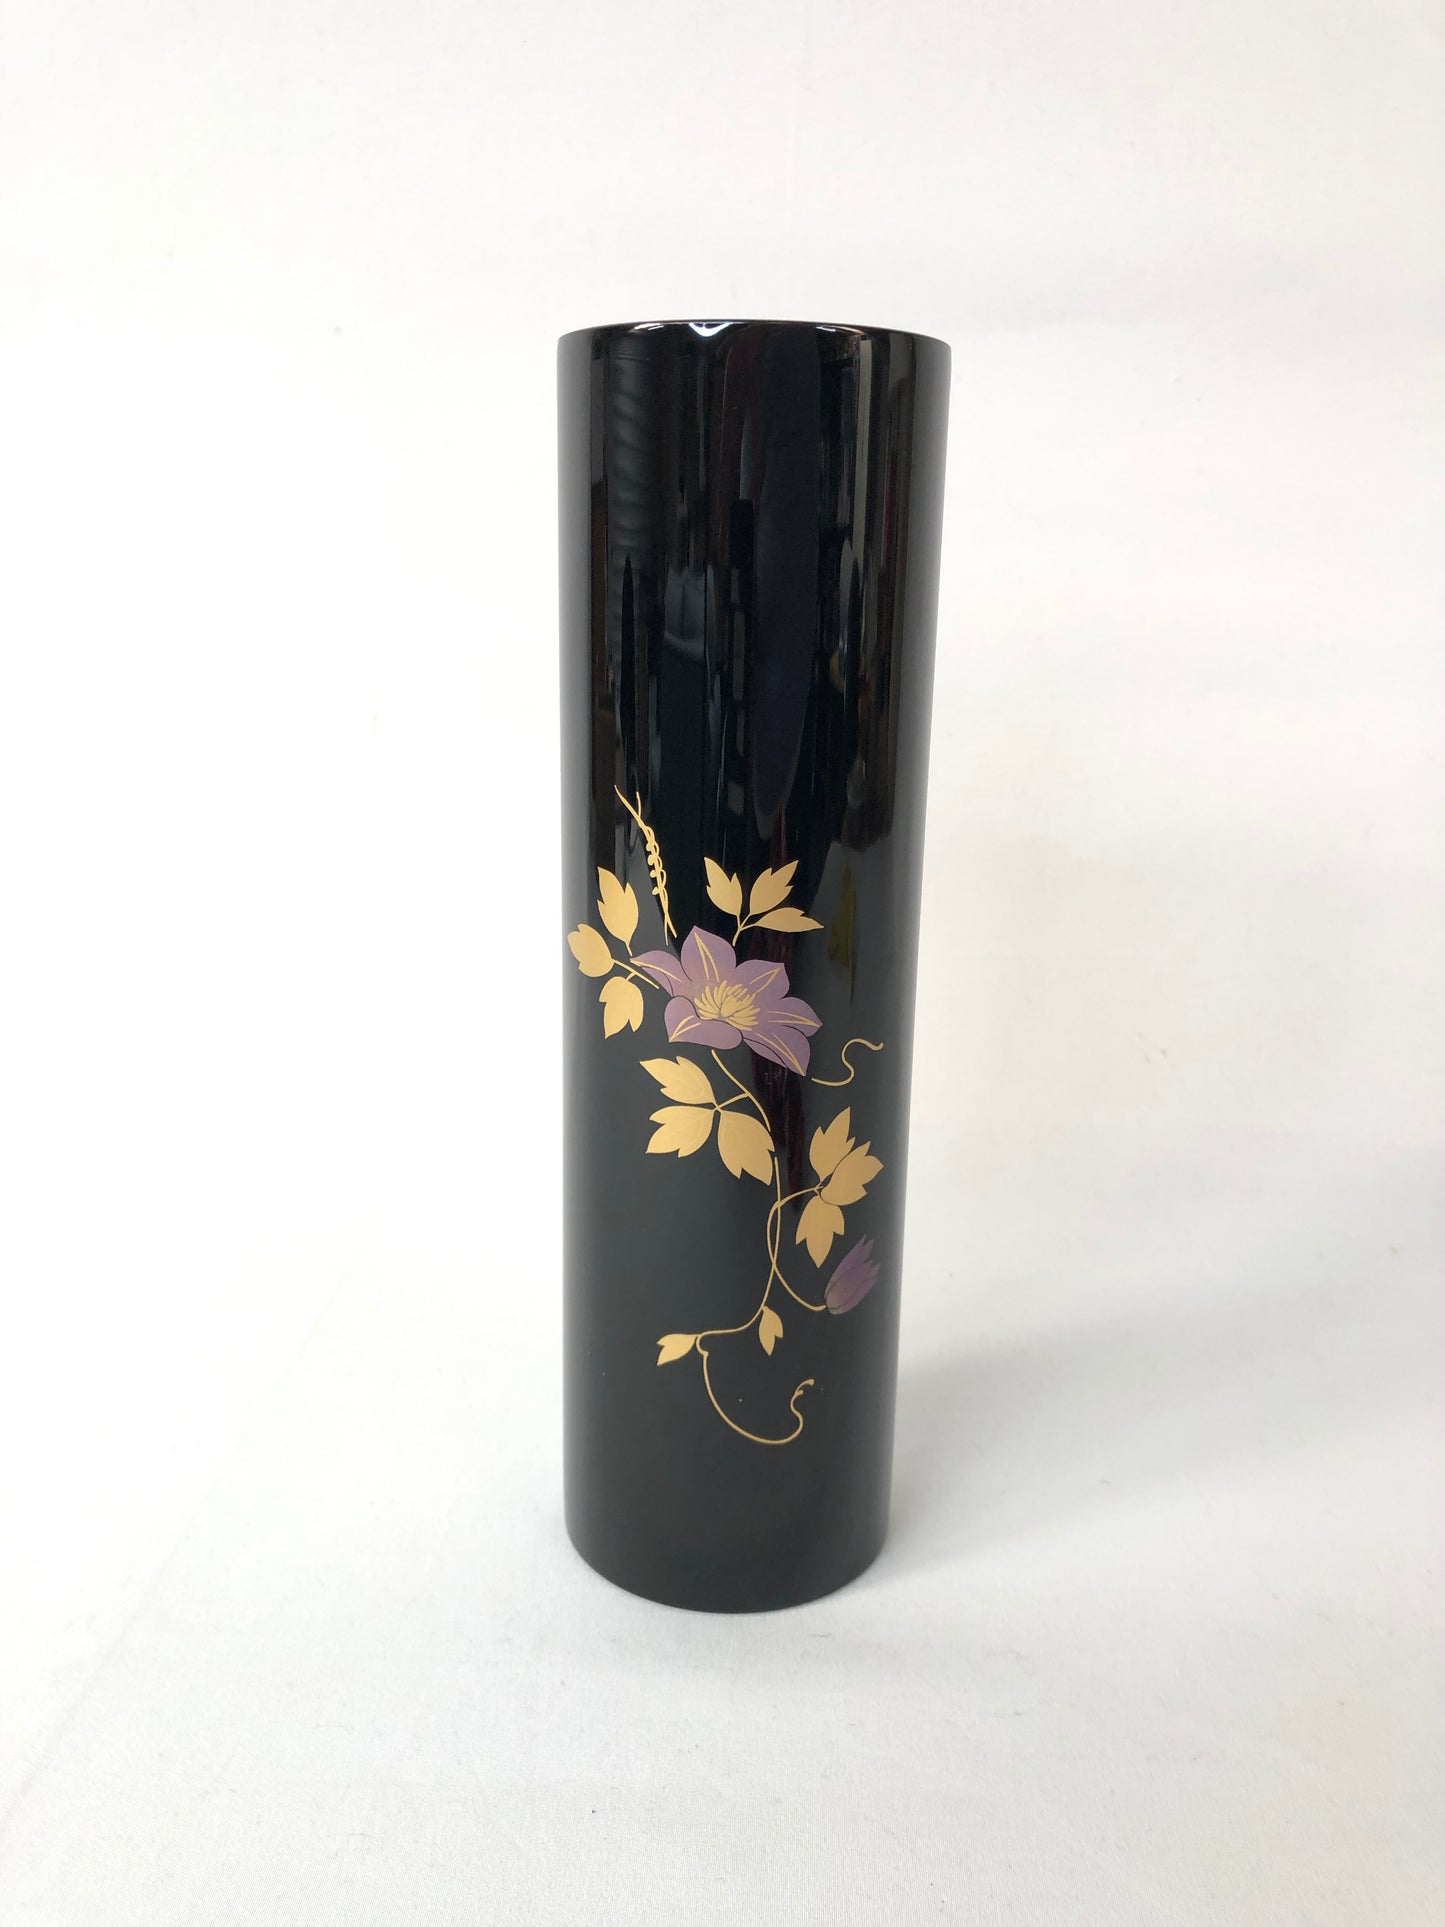 
                  
                    Vintage Japanese Ikebana Vase(14978)
                  
                